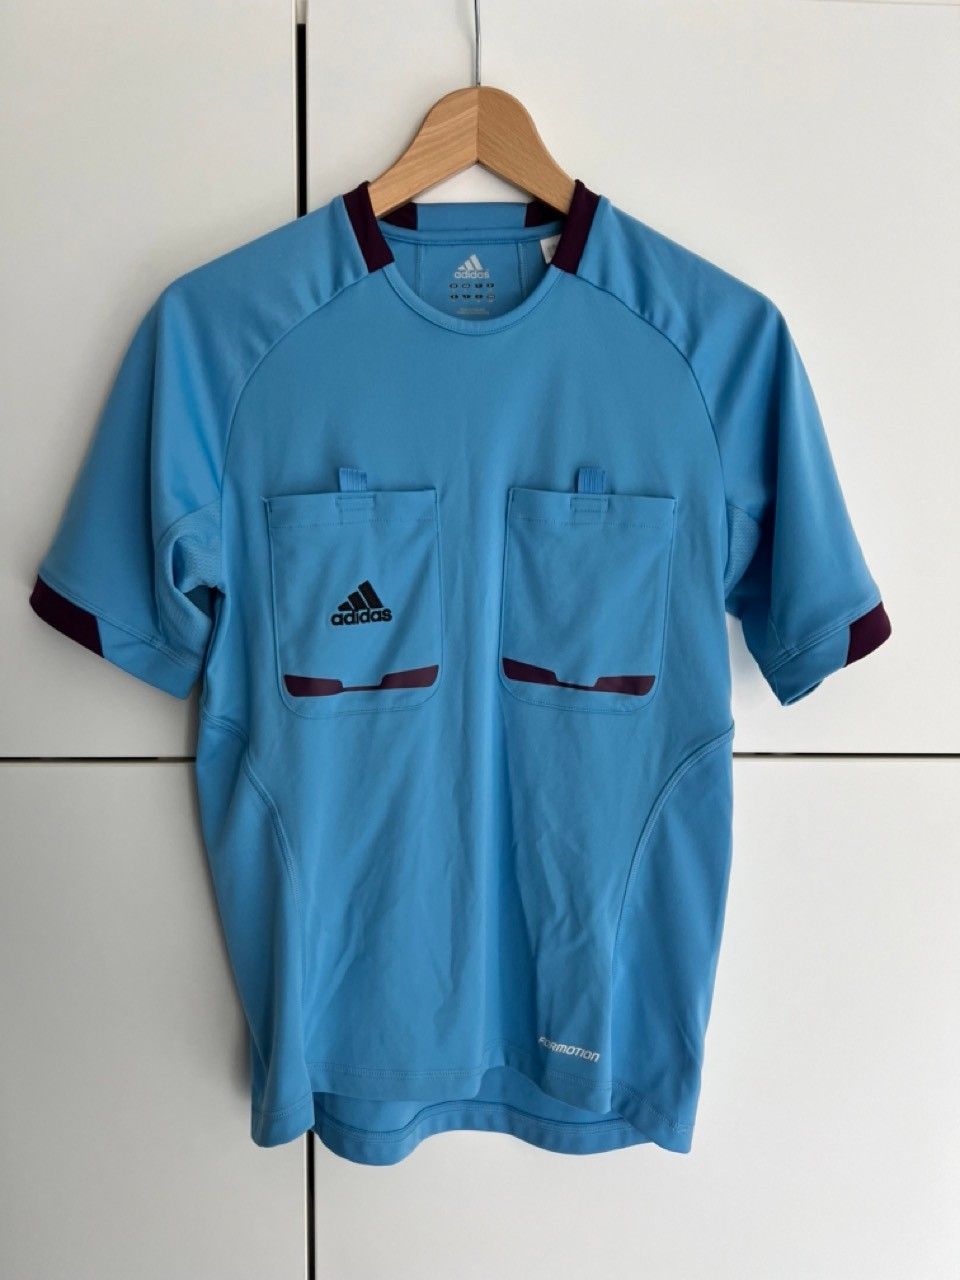 Jalkapallotuomarin paita S-koko, Adidas ClimaCool, v.sininen